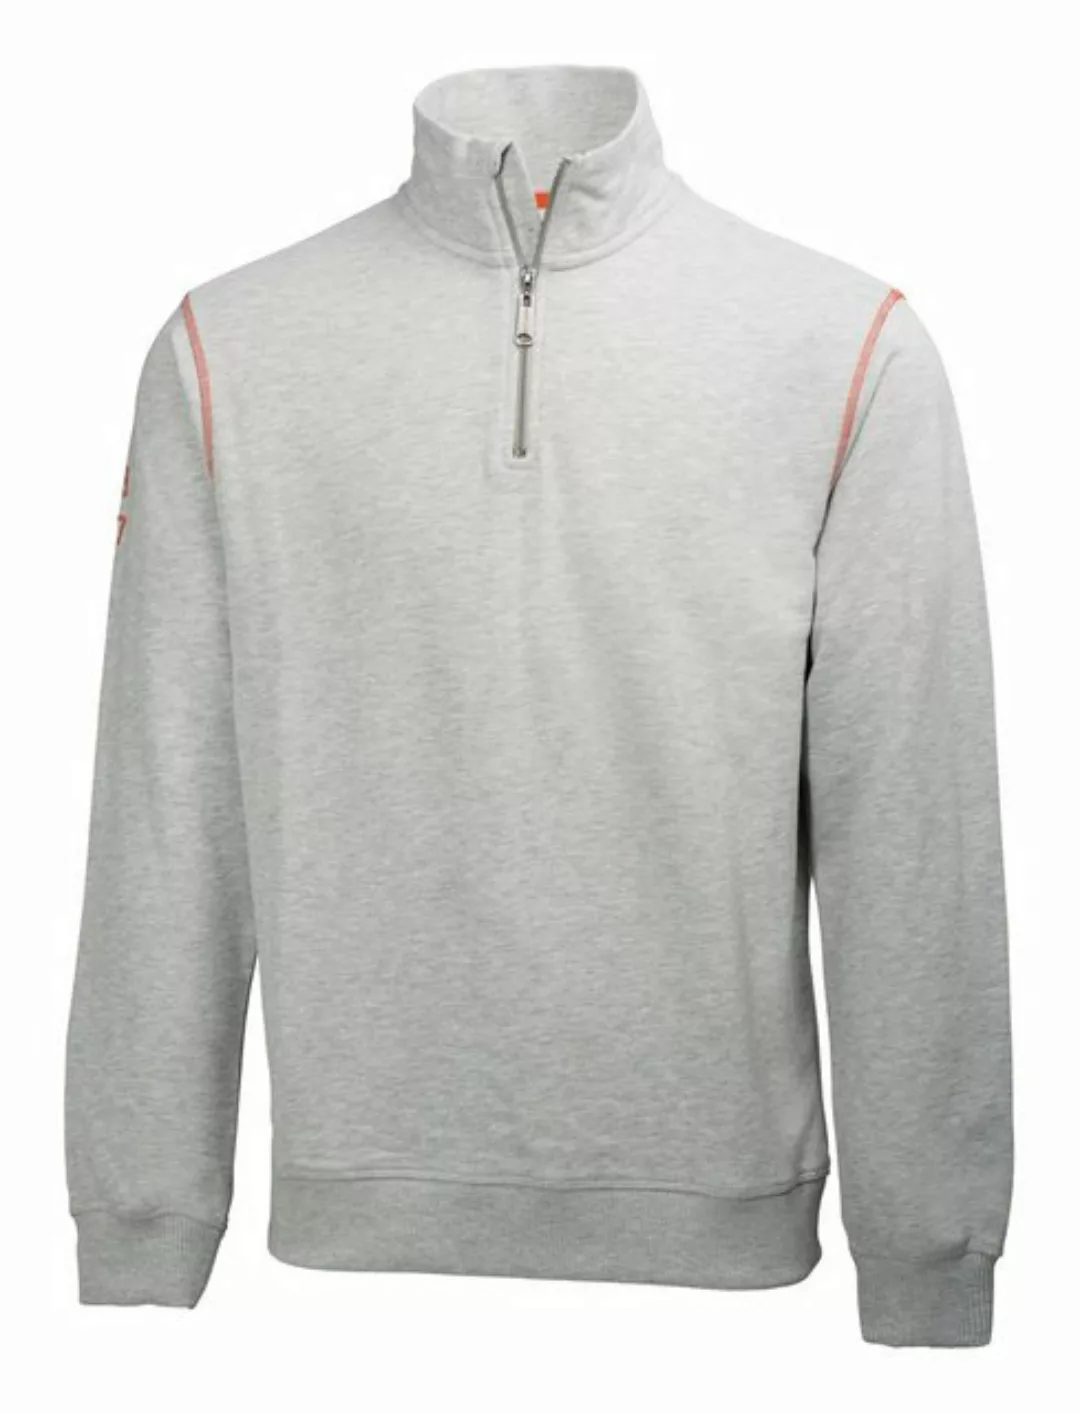 Helly Hansen workwear Sweatshirt Sweater Oxford, Größe XL, grau-melliert günstig online kaufen